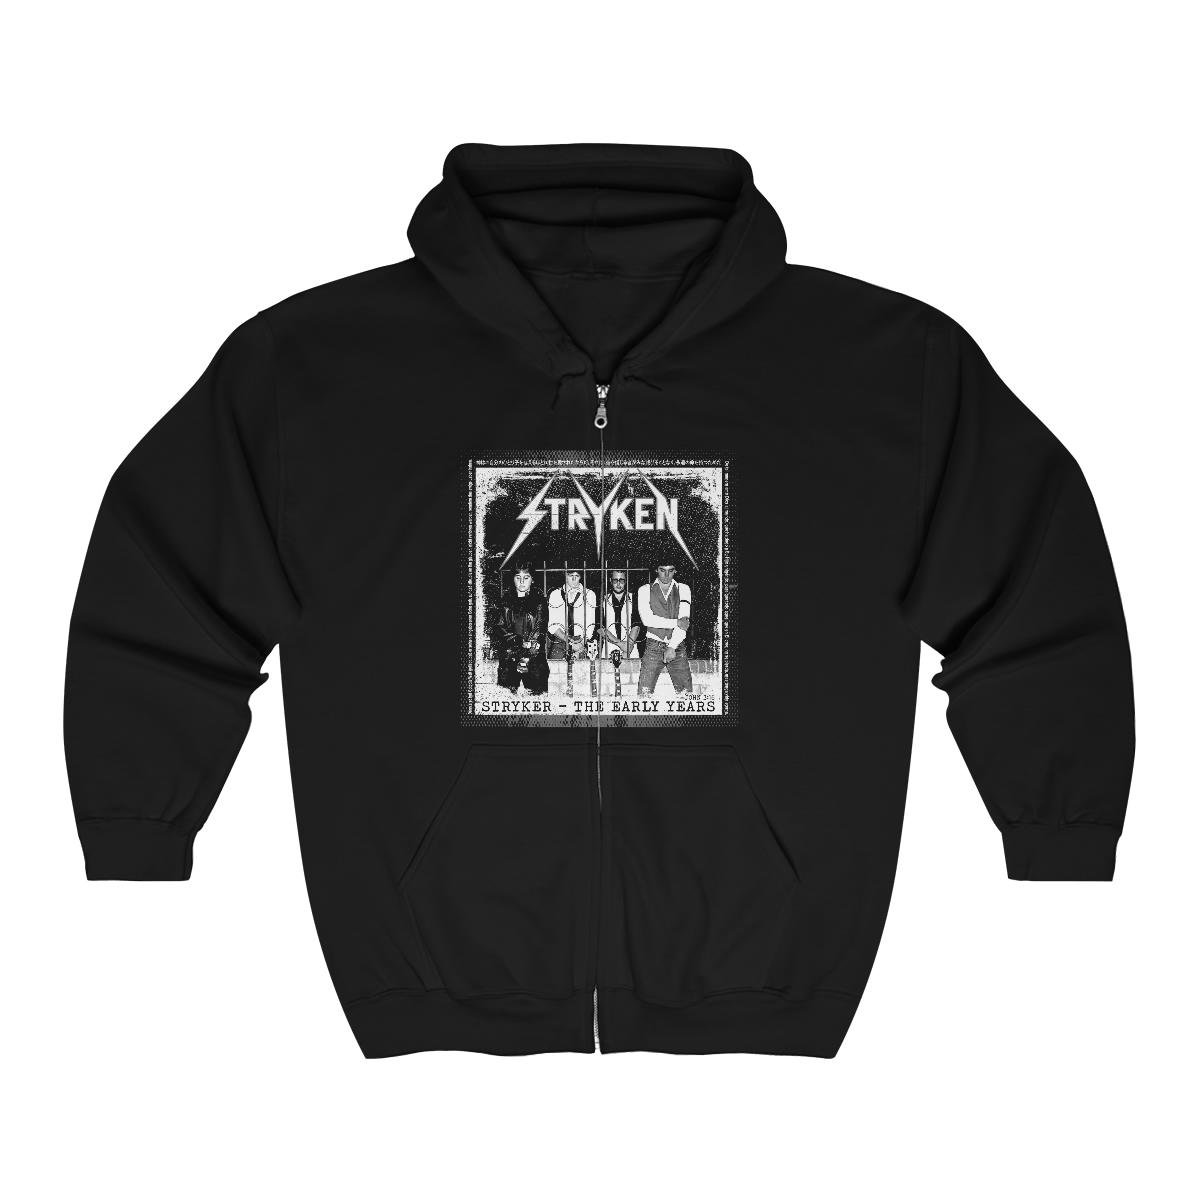 Stryken – Stryker-The Early Years Full Zip Hooded Sweatshirt